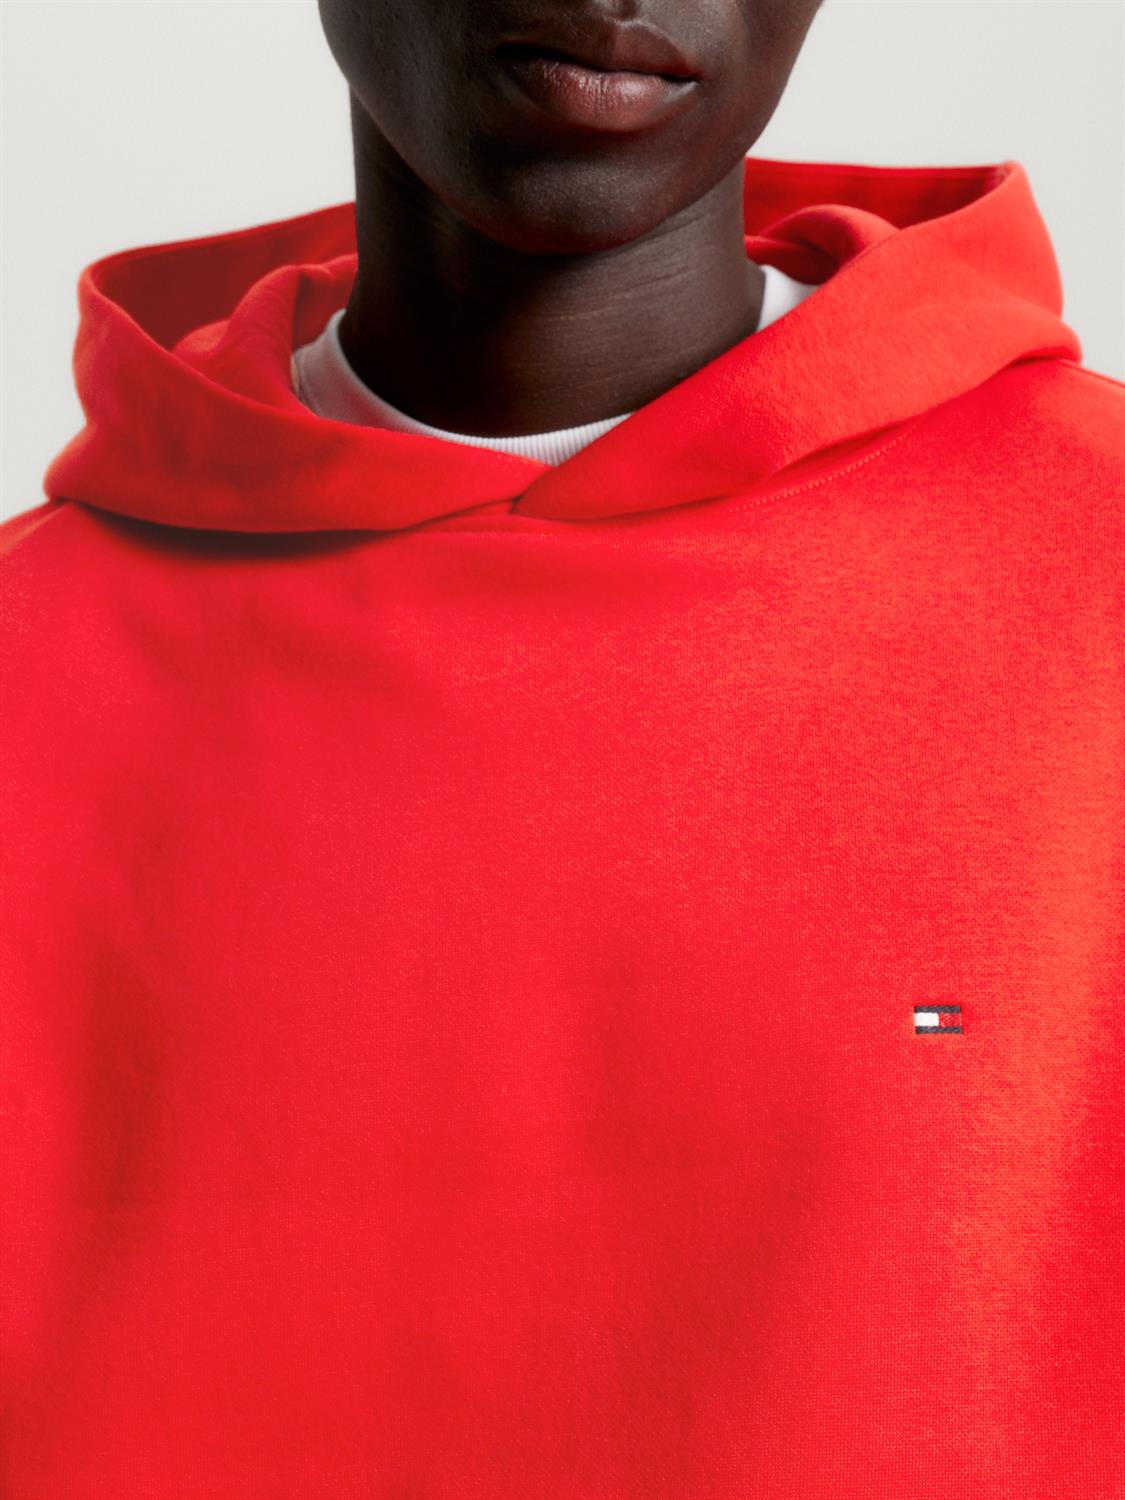 Tommy Hilfiger Herren Sweatshirt Hoodie mit Flag Logo orange bequem online  kaufen bei